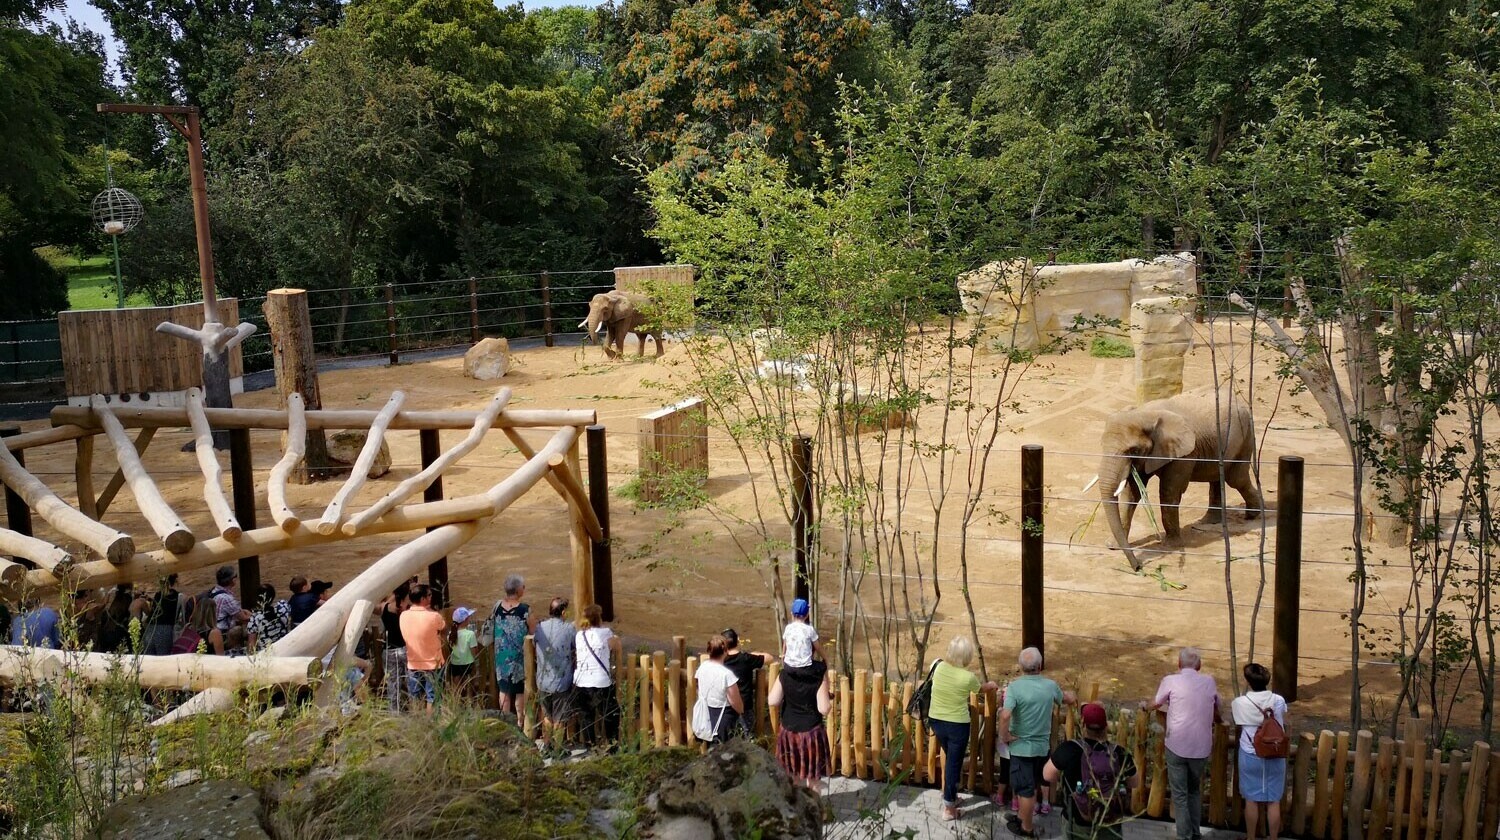 Elefantenaußenanlage im Überblick mit Elefanten